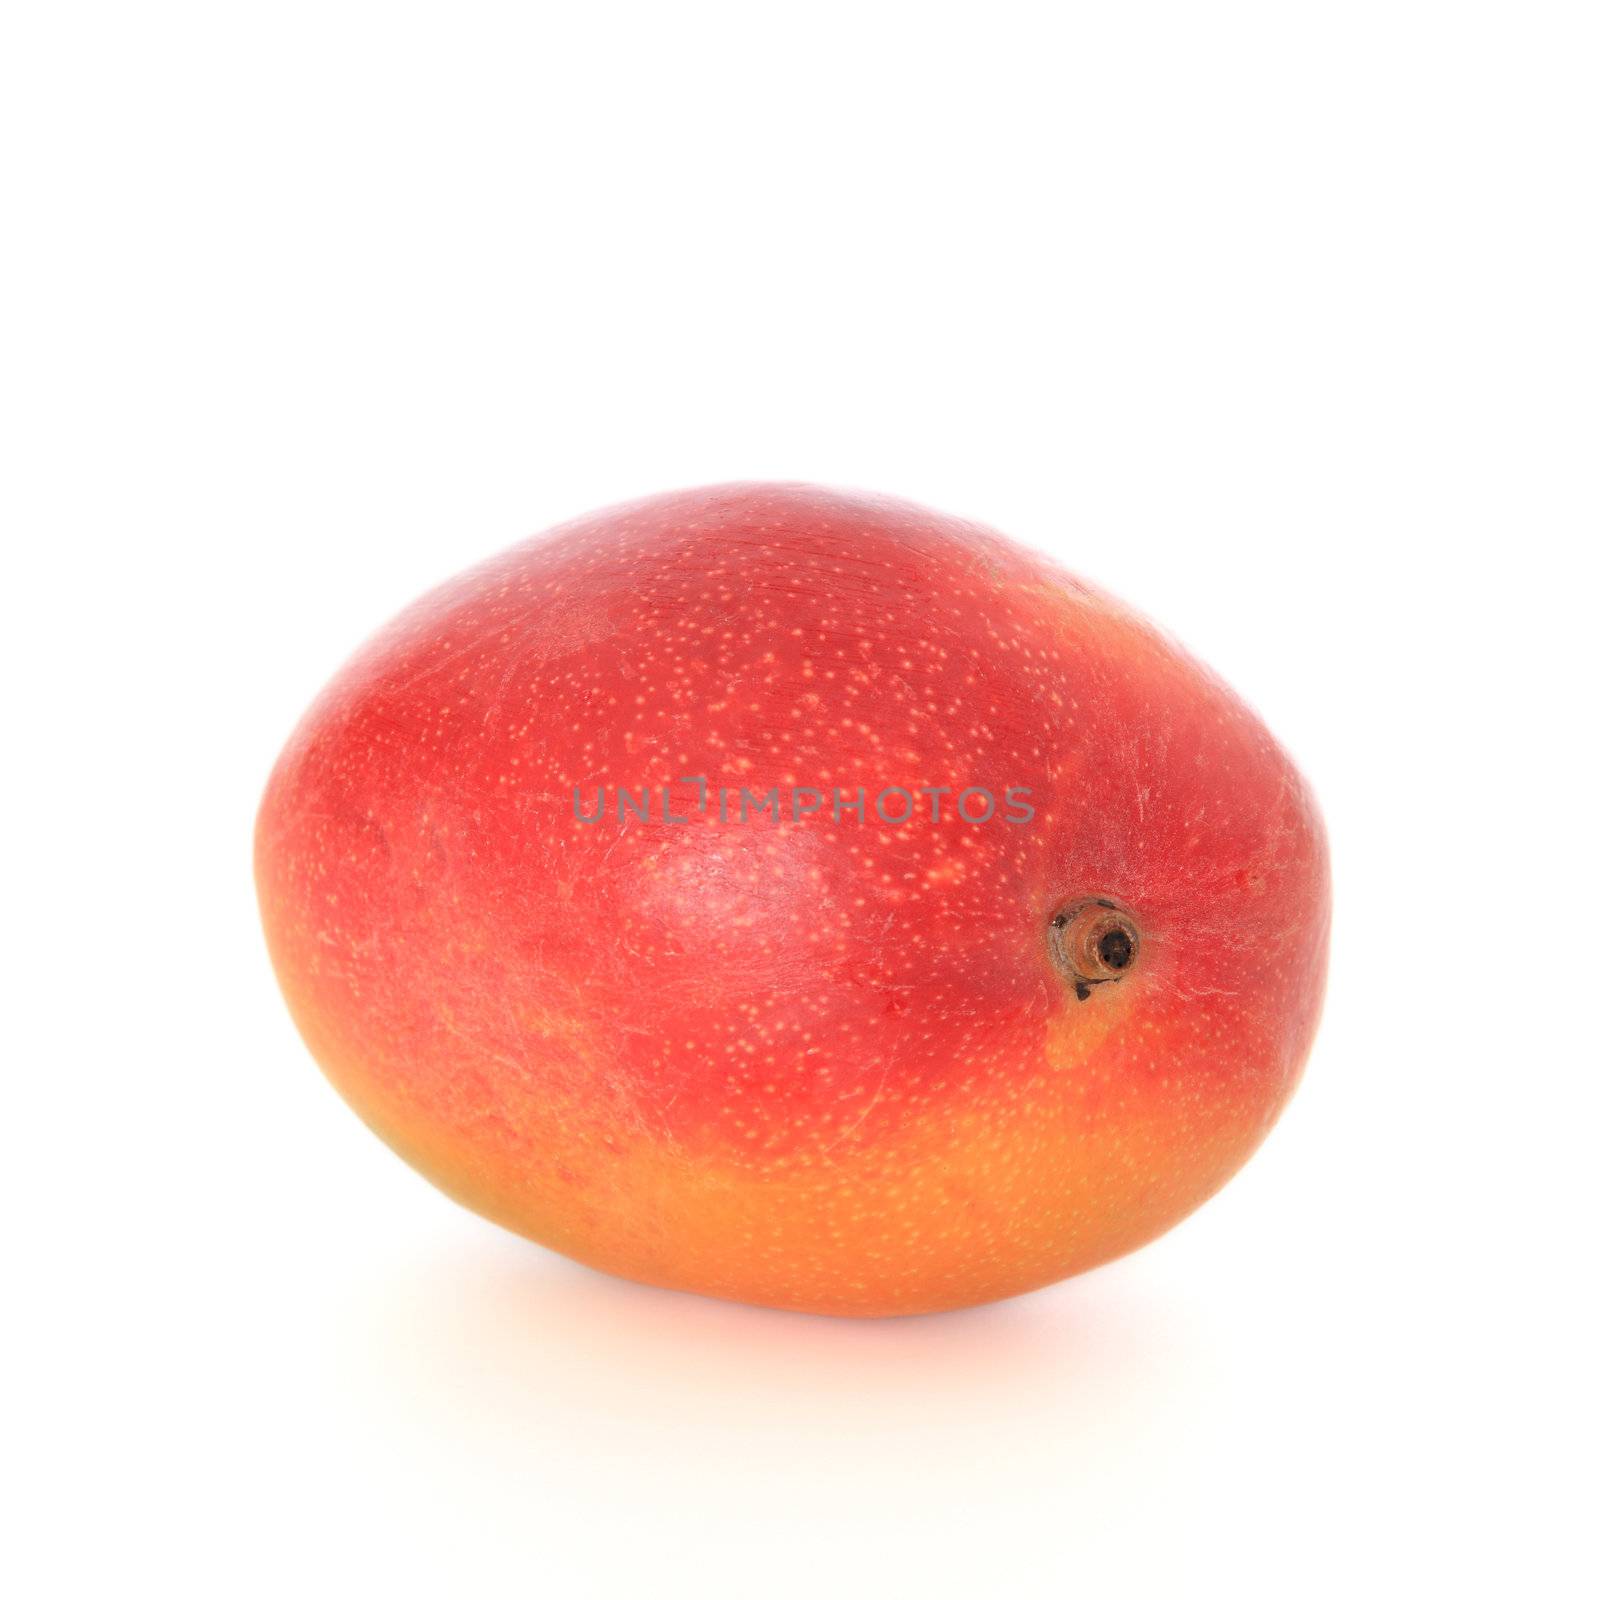 Ripe mango on white background.